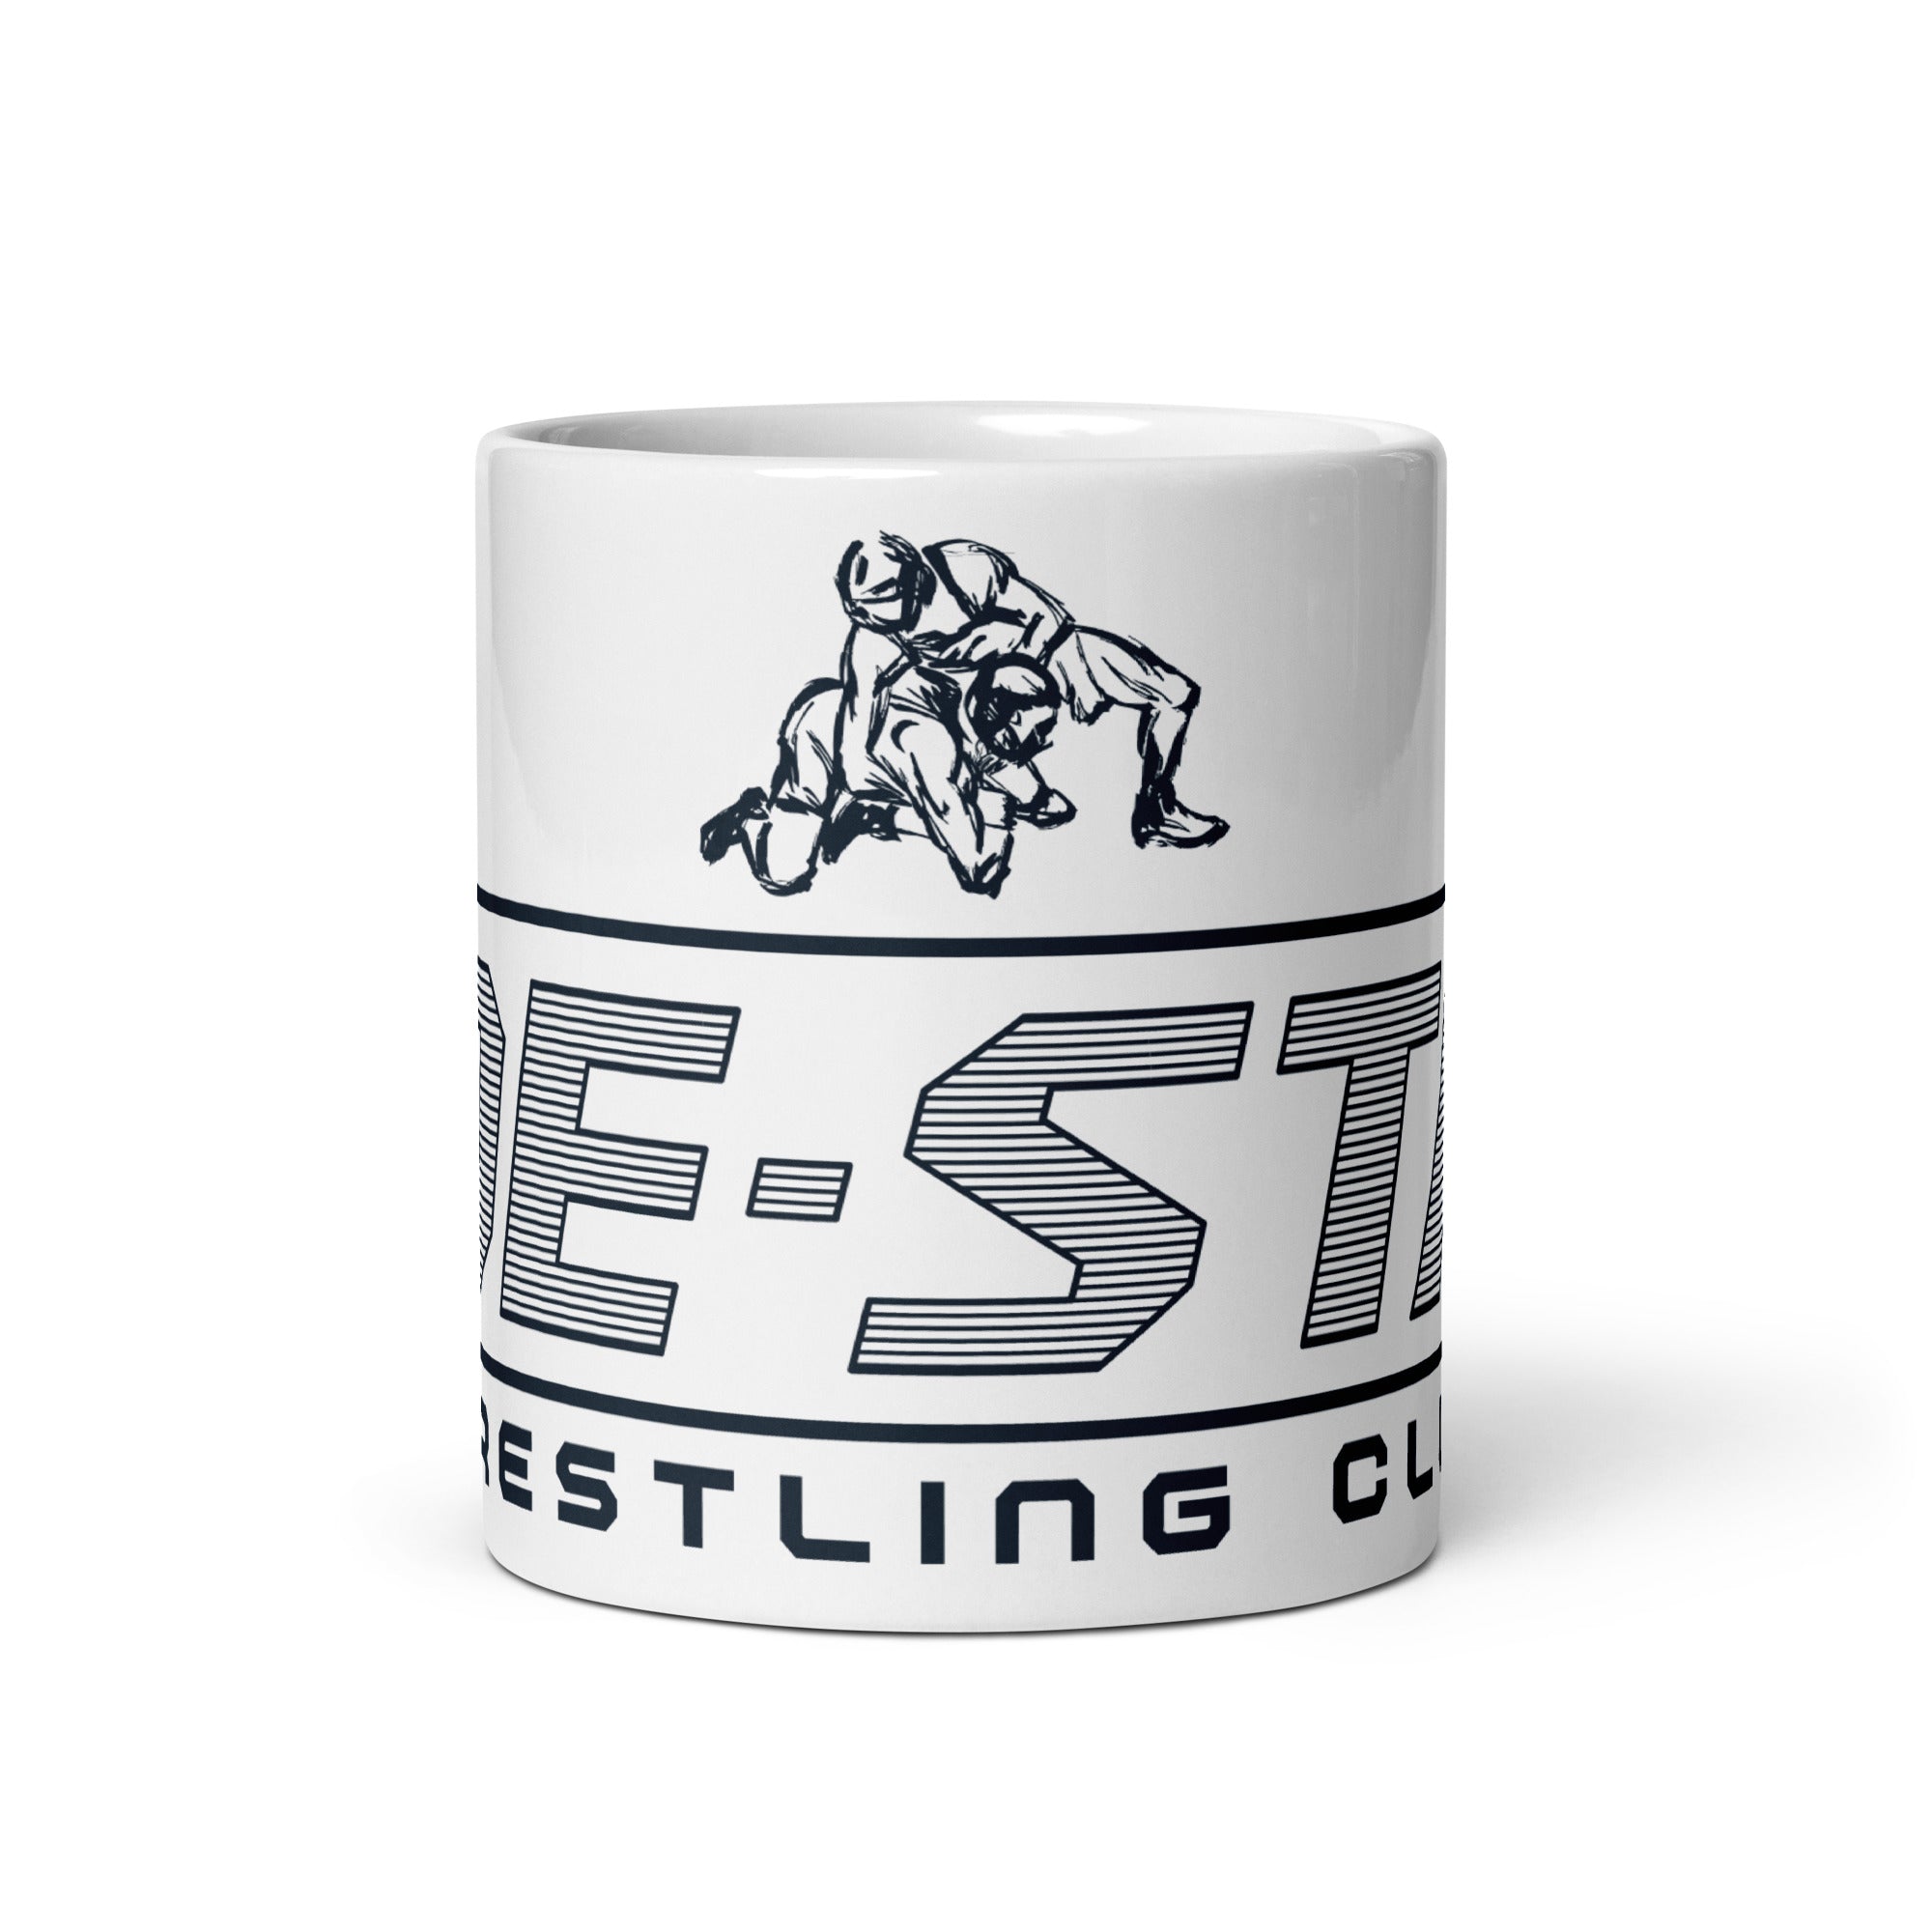 OE-STA Wrestling Club White glossy mug